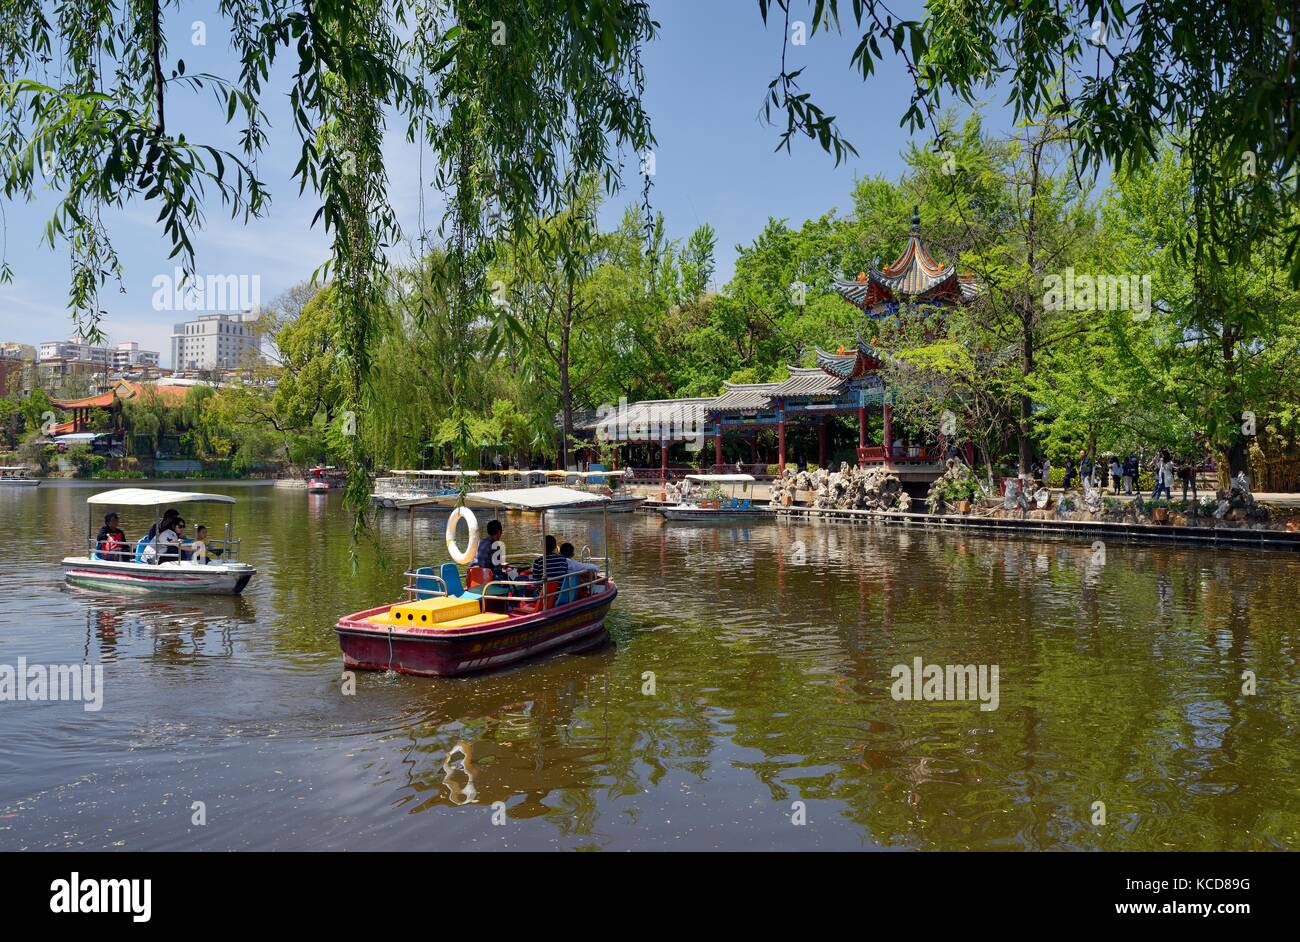 Green Lake Park dans la ville de Kunming date de la dynastie Qing. Plaisance et pavillons au bord du lac. La province de Yunnan, Chine. ville de l'éternel printemps Banque D'Images